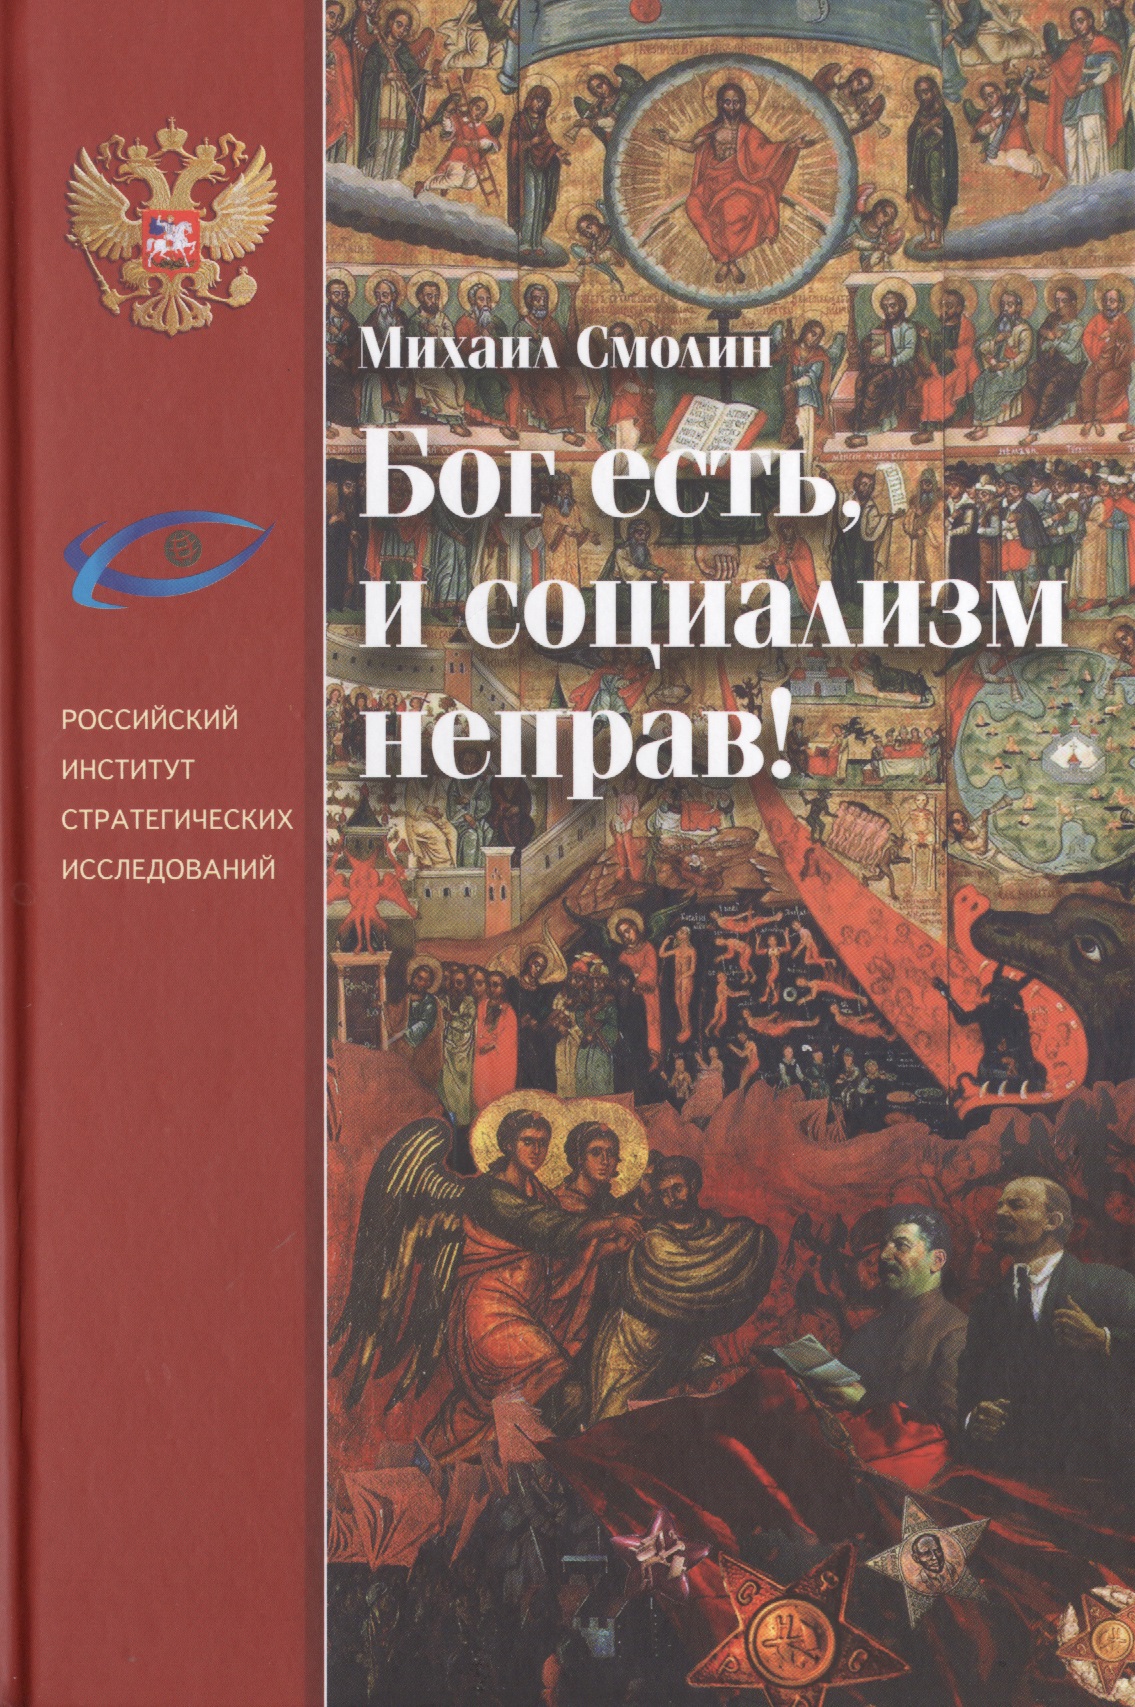 Смолин Михаил Борисович Бог есть, и социализм неправ! смолин михаил борисович церковь государство и революция